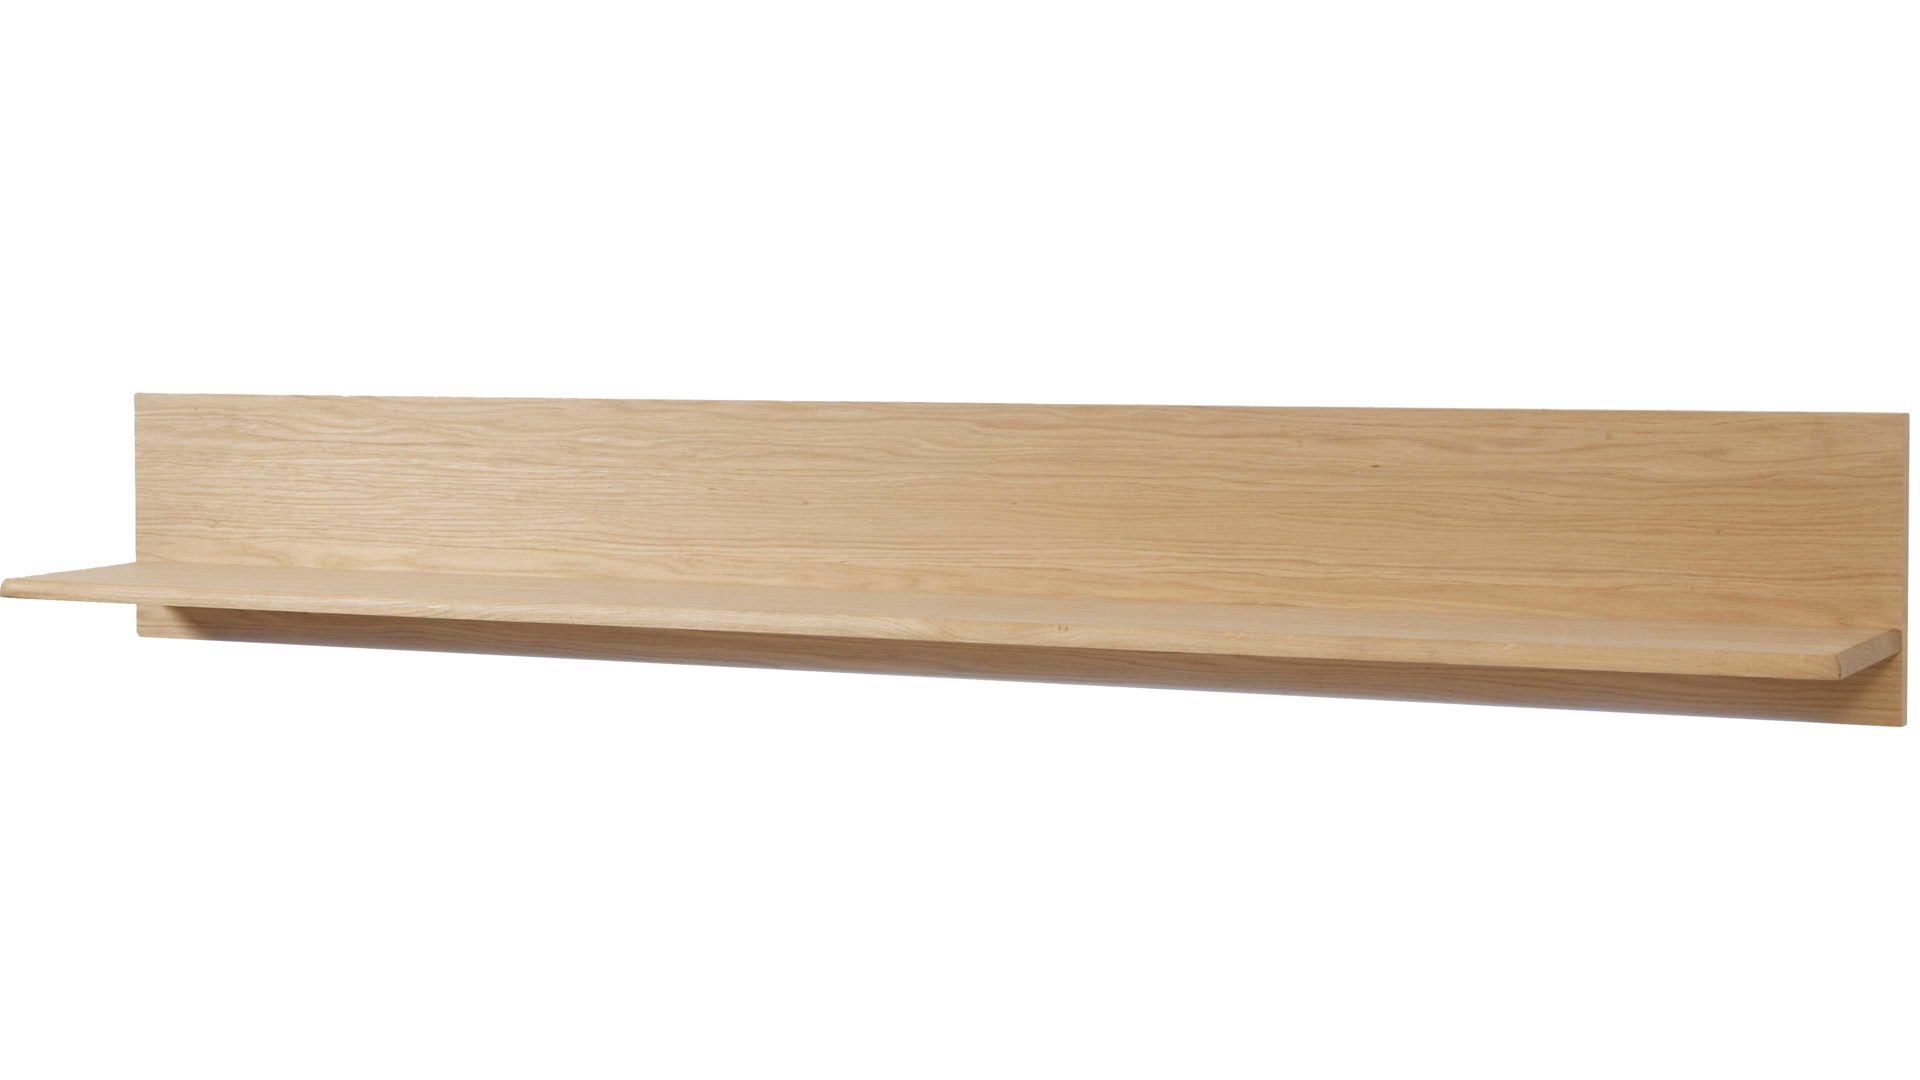 Wandregal Mca furniture aus Holz in Holzfarben Wandboard mit Rückwand Bianco geölte Eiche – Länge ca. 110 cm